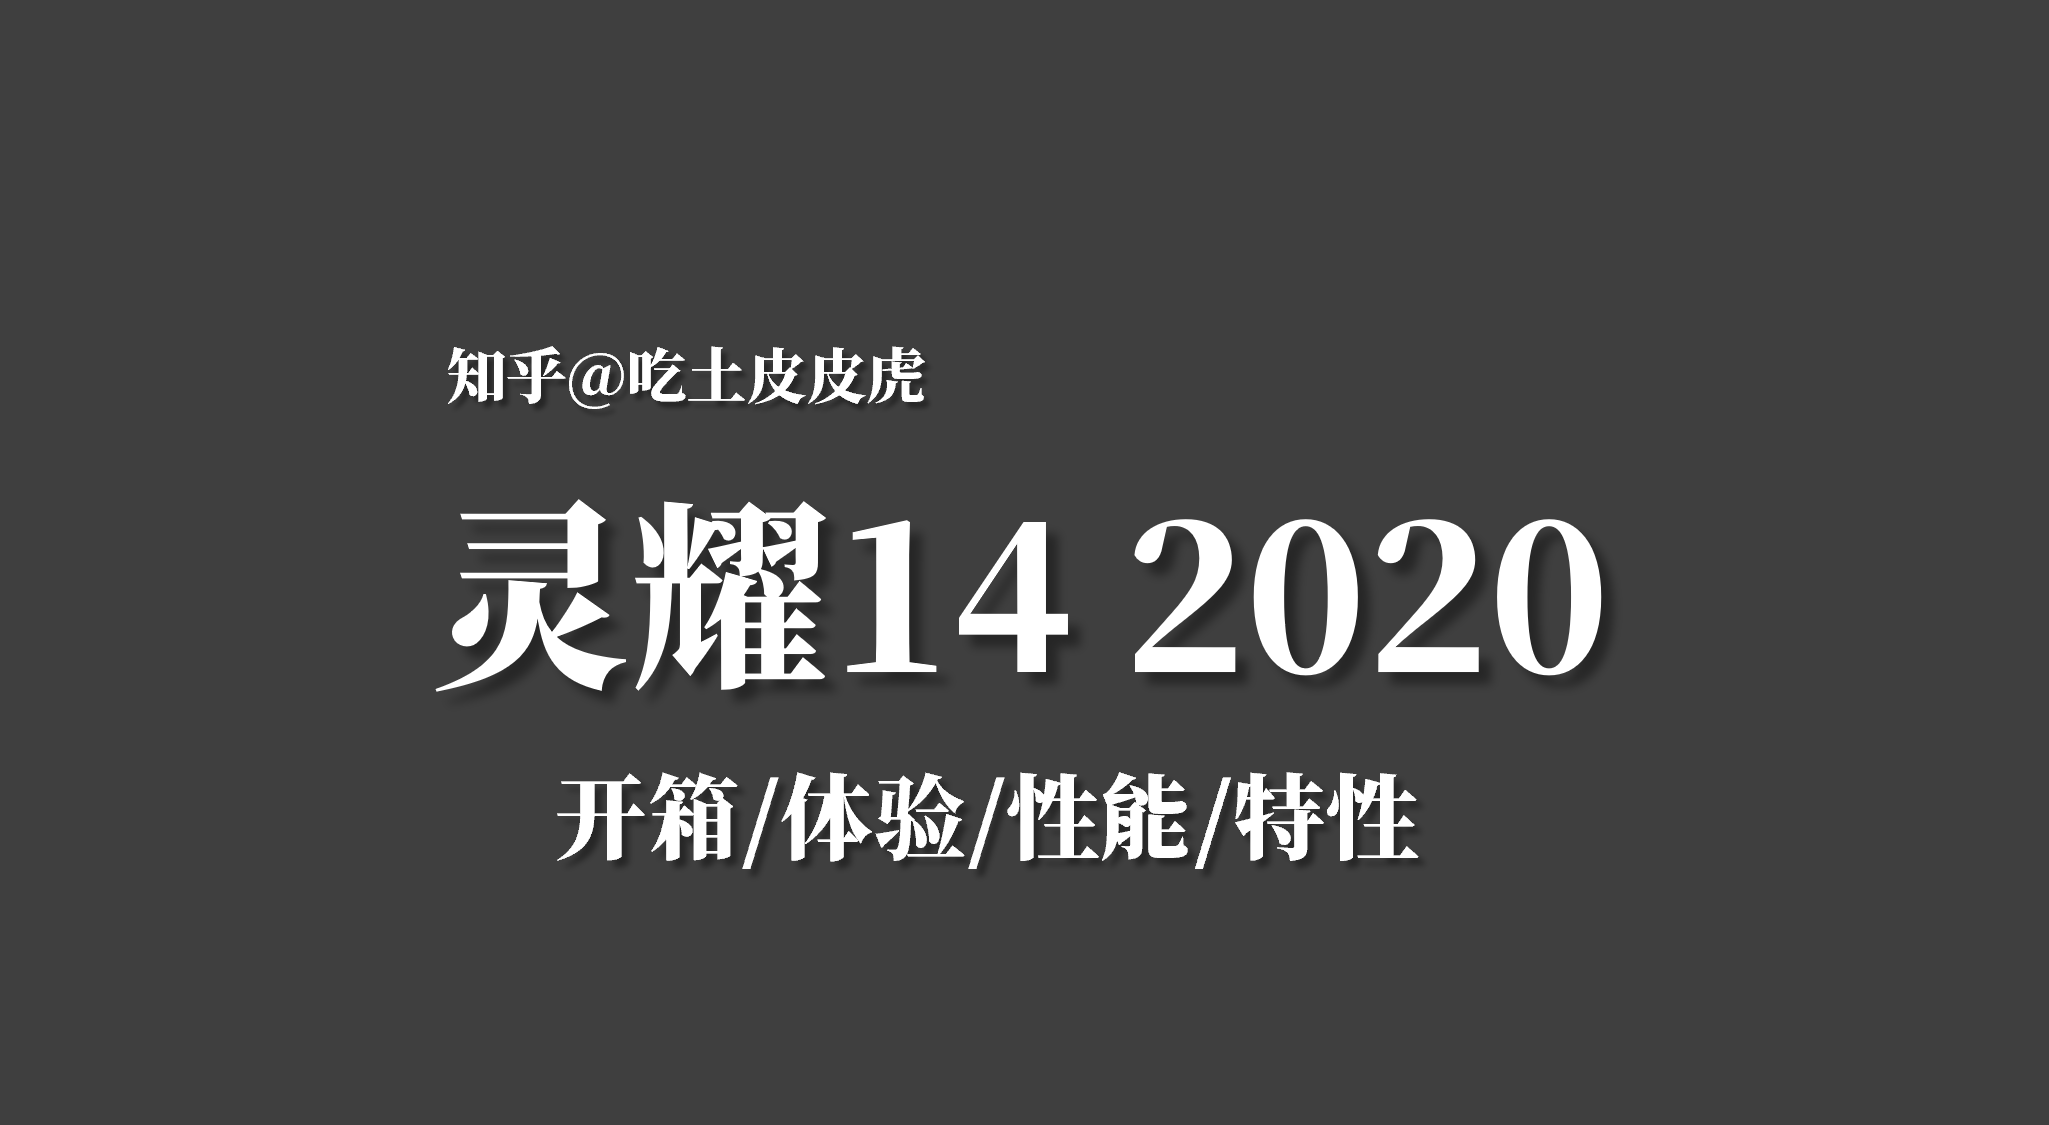 【华趁祝耀14 2020】搂箱/胯验/性苞/特性